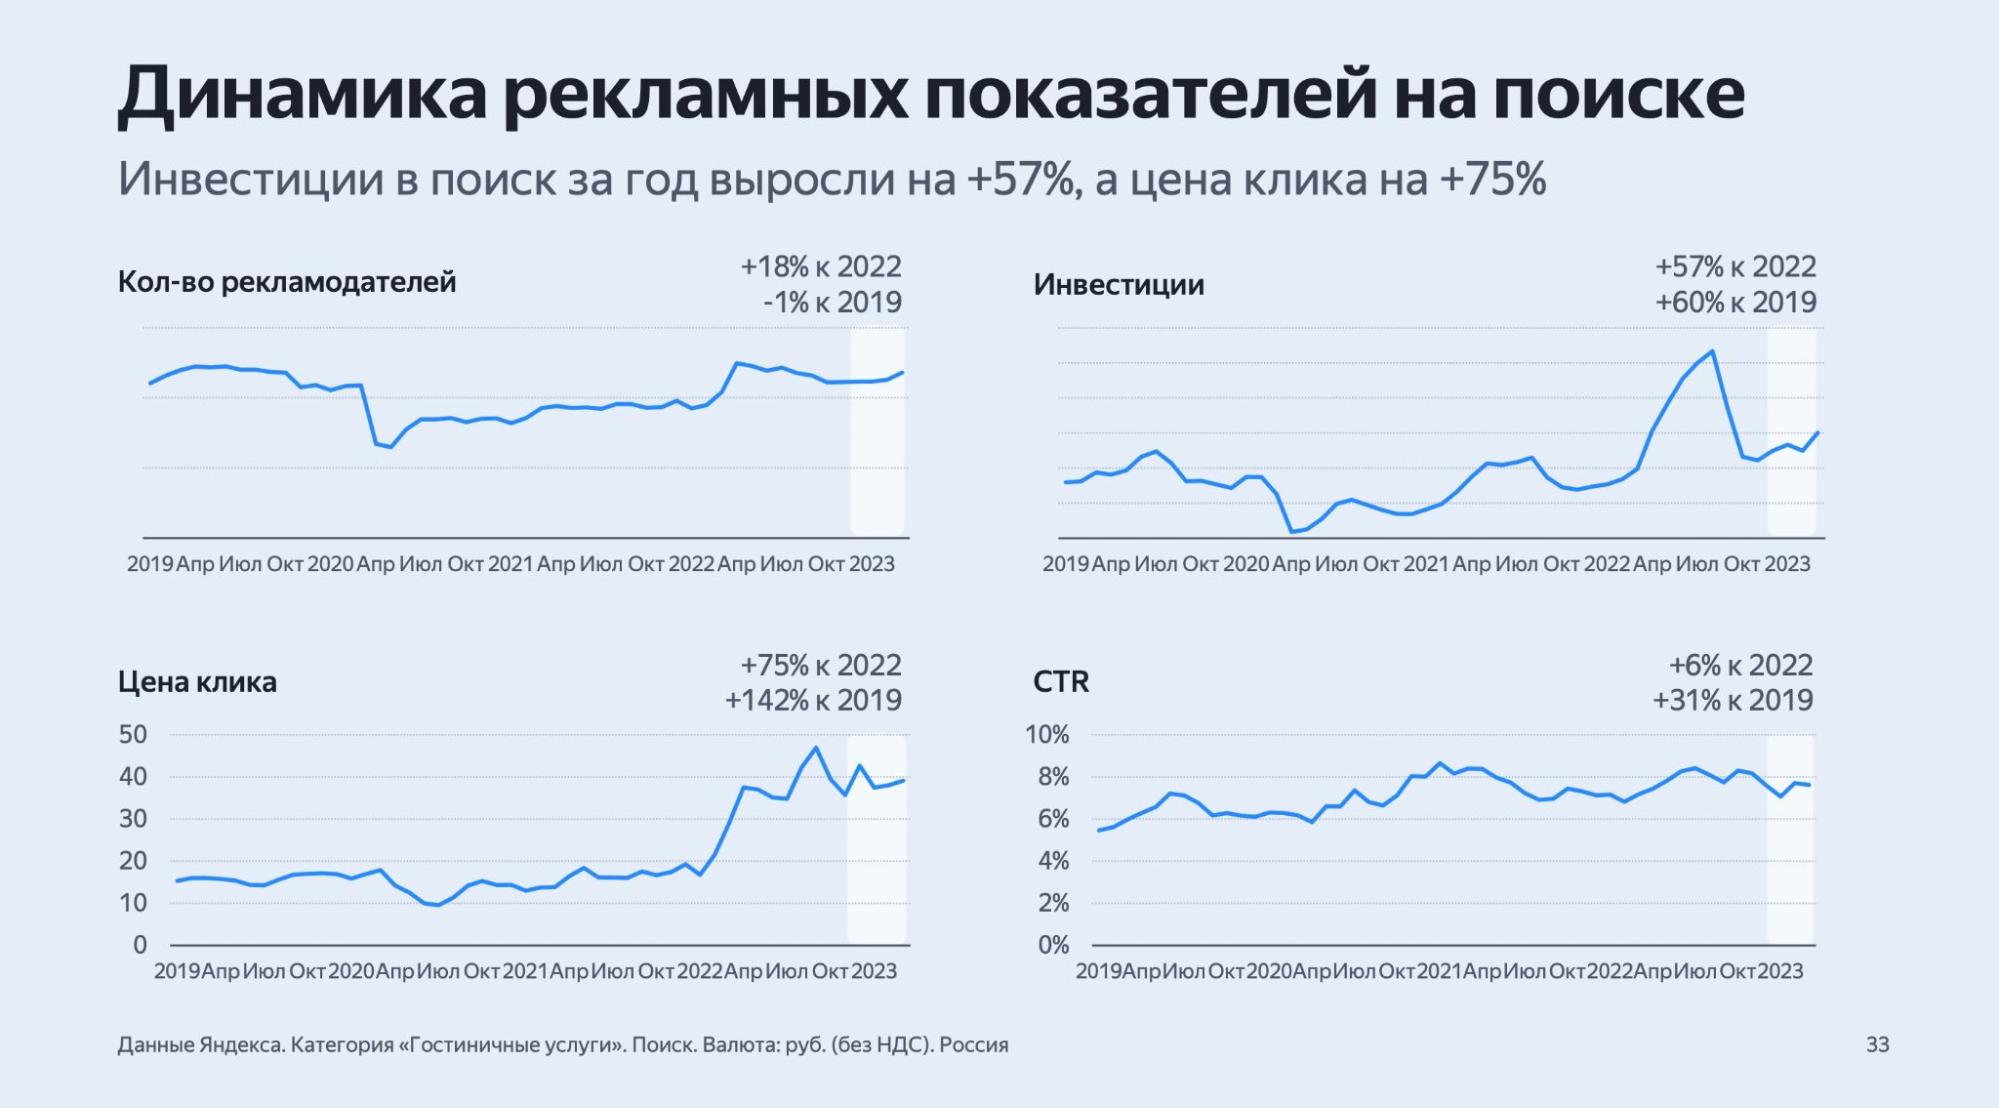 Данные из отраслевого отчета Яндекса «Гостиничные услуги»